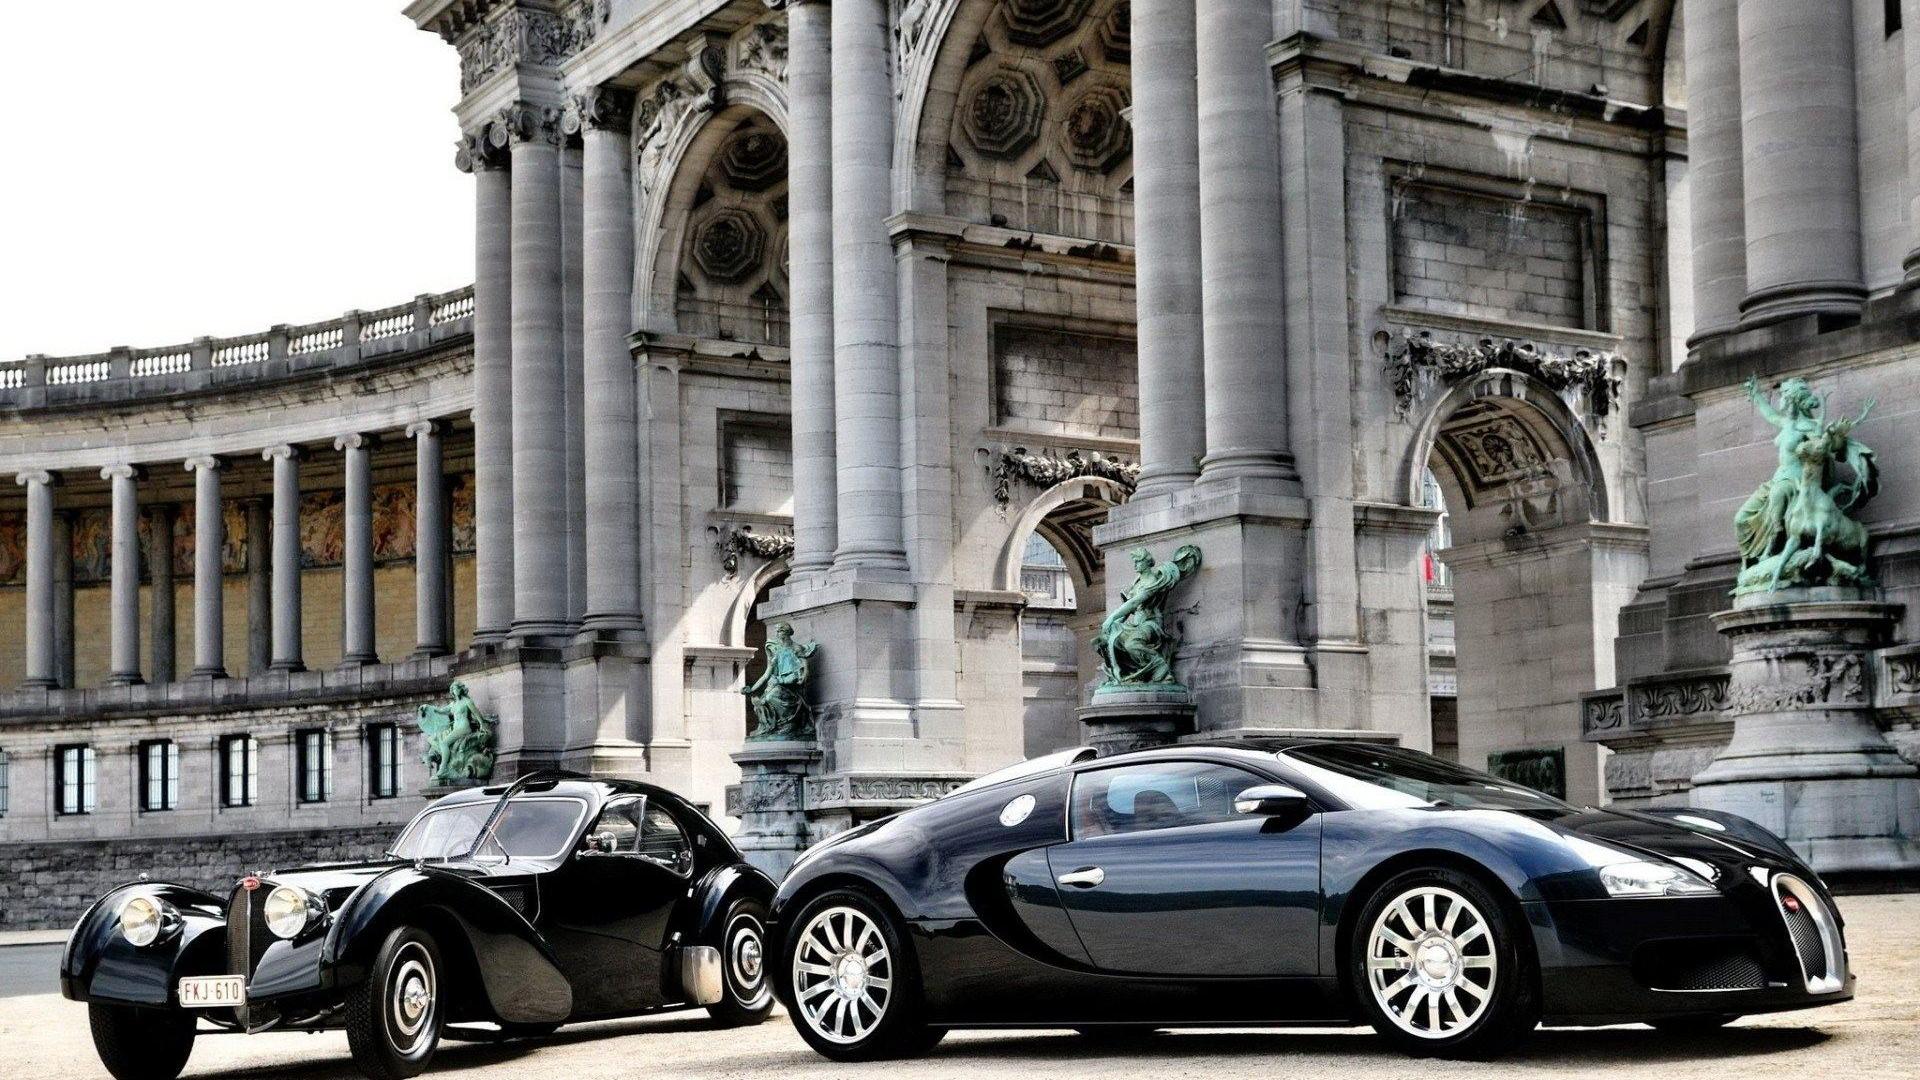 Bạn yêu thích siêu xe Bugatti Veyron? Bạn muốn tải hình nền siêu xe này để thể hiện đẳng cấp của bạn? Chúng tôi cung cấp những hình nền siêu xe Bugatti Veyron sang trọng nhất để bạn tha hồ lựa chọn. Khám phá ngay để tải miễn phí và trưng bày đẳng cấp của bạn.